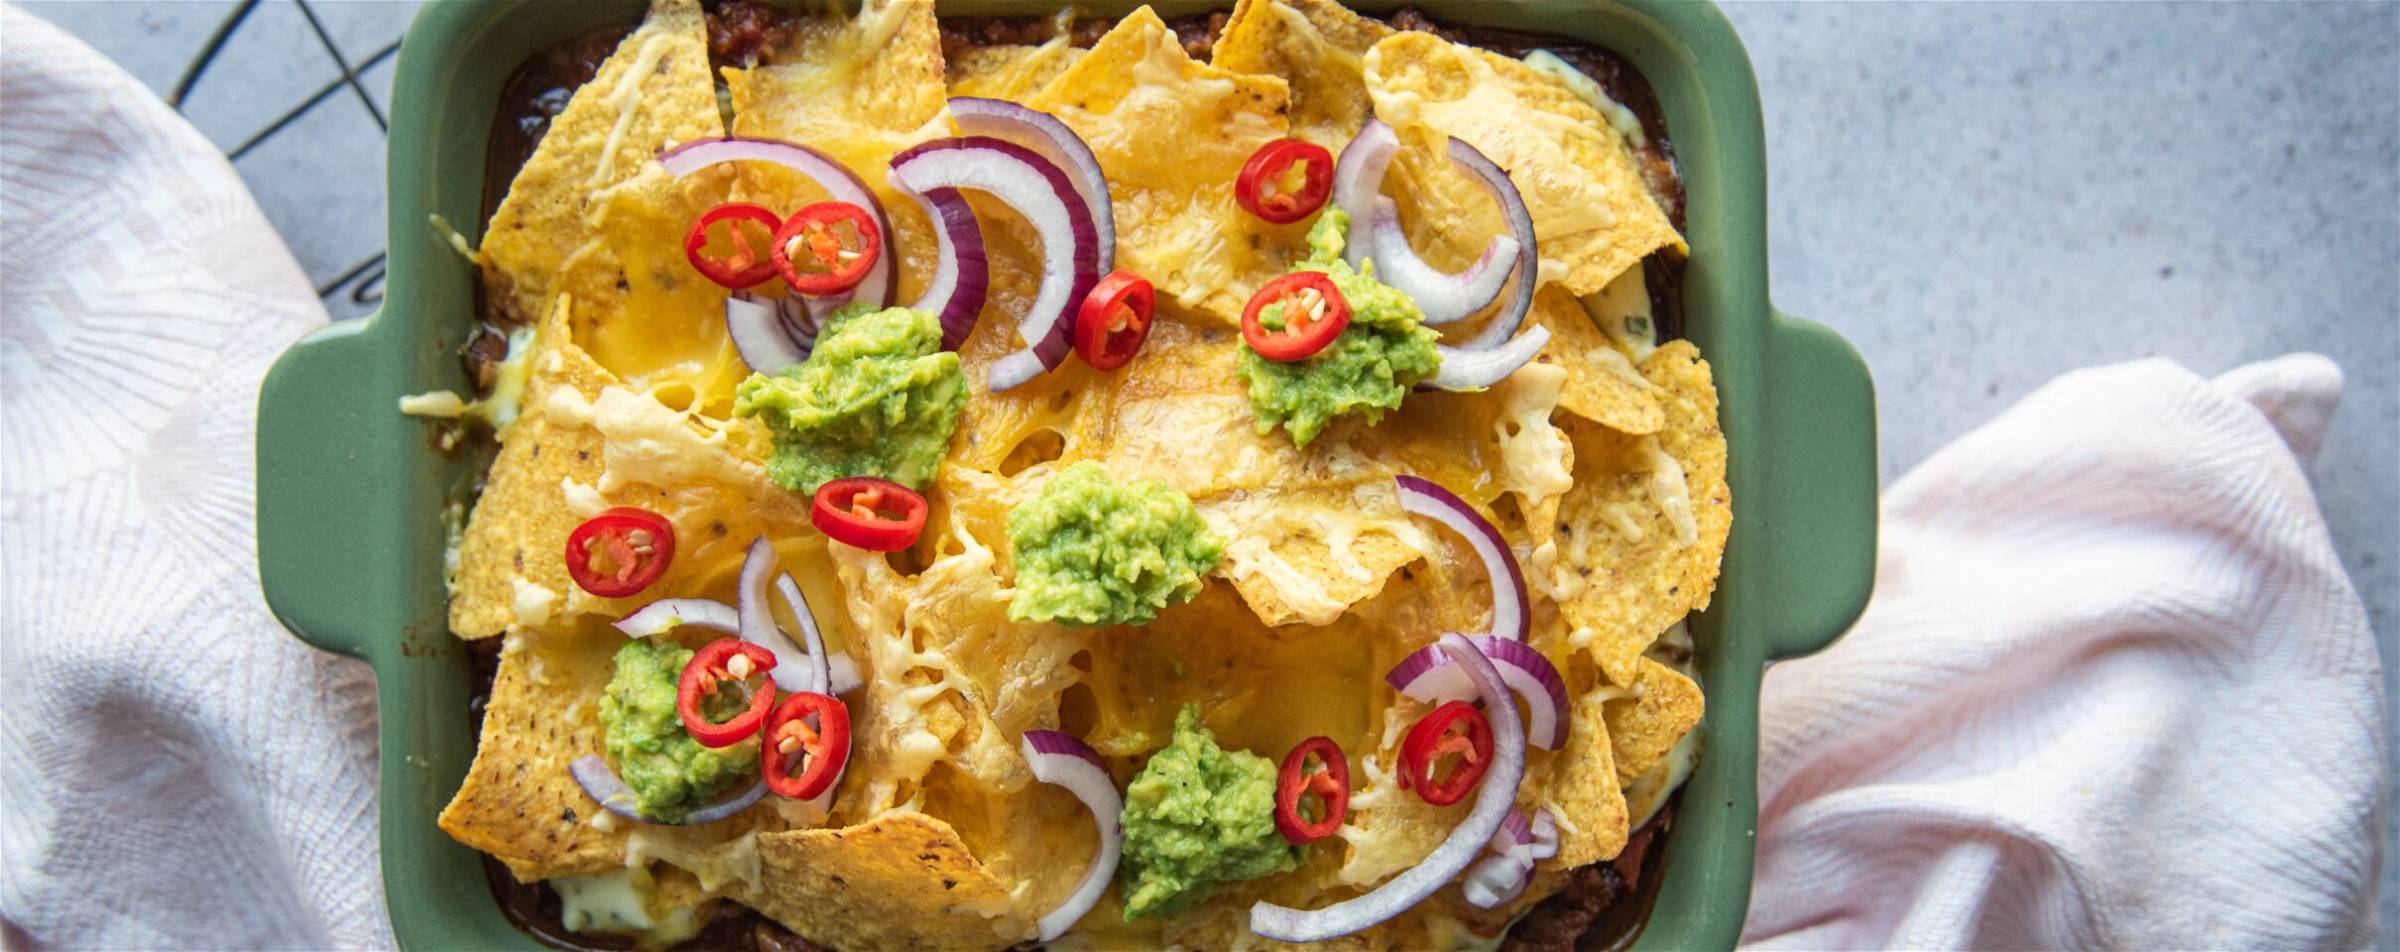 Nacho's ovenschotel met guacamole, gesmolten kaas, rode pepers en rode ui. Overheerlijk en gezond recept volgens de MA Methode.